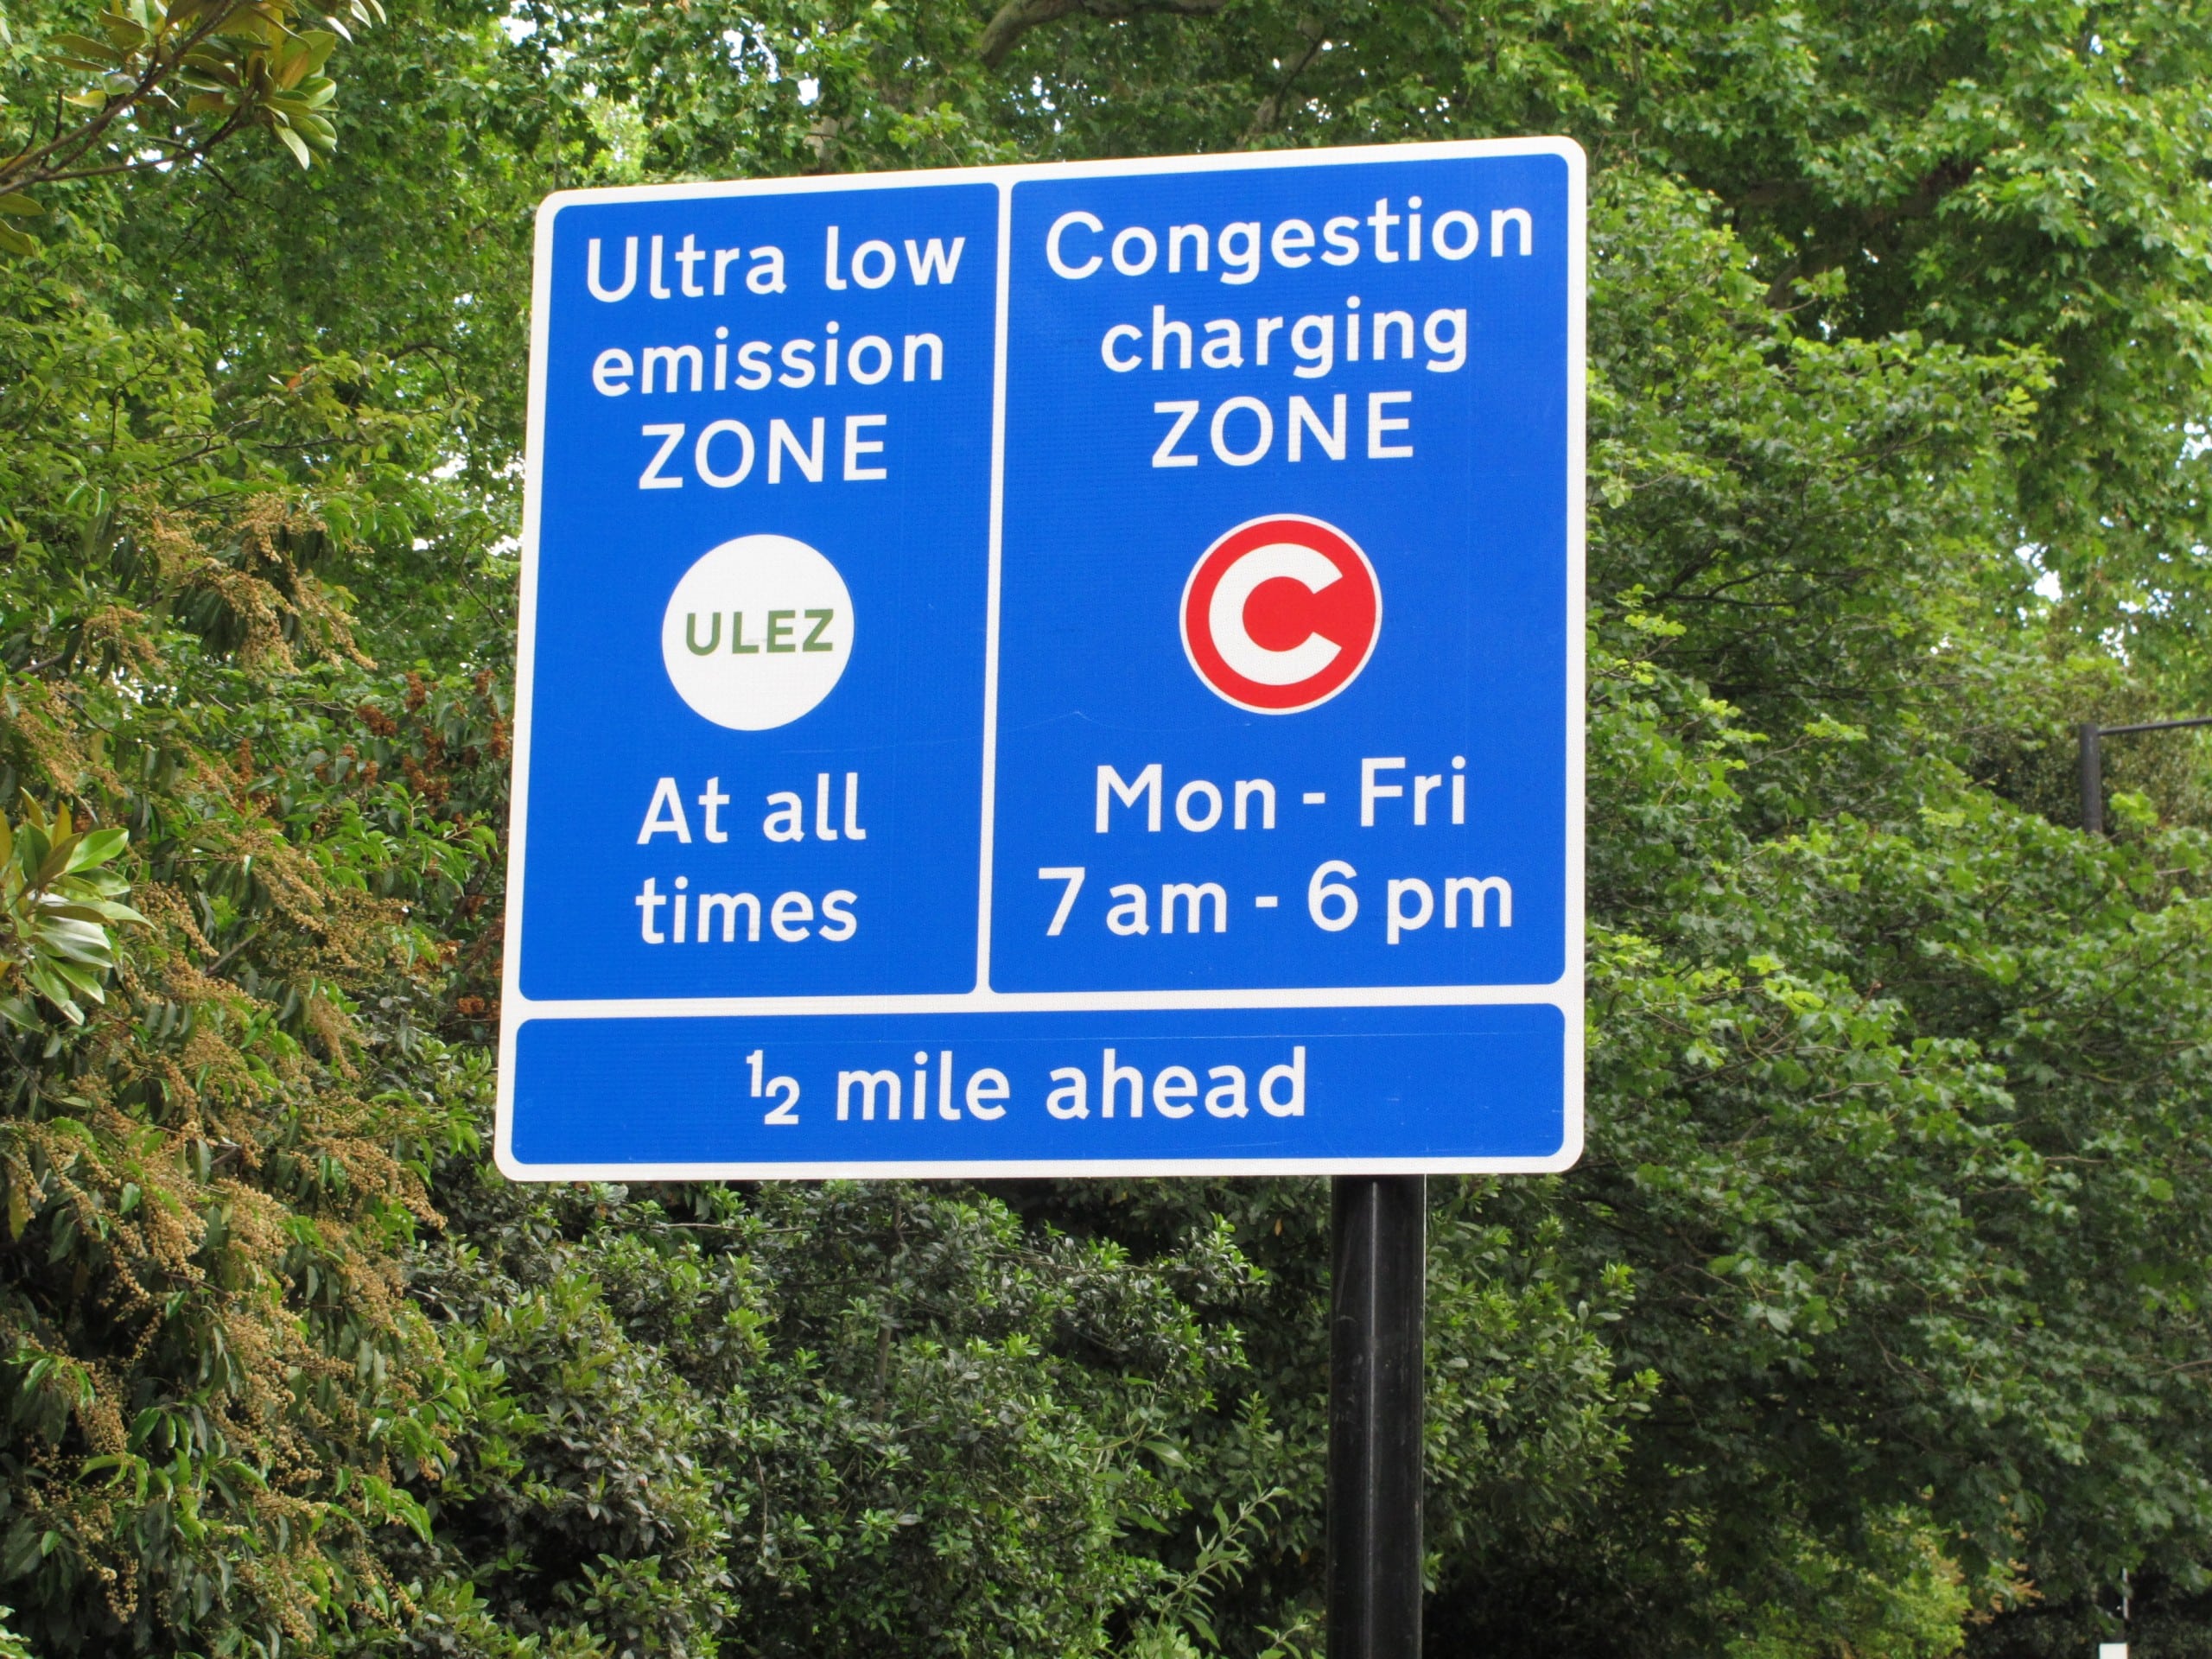 London möchte anhand der Umweltzone sowie mithilfe der Congestion Charge die Luft- und Lebensqualität in der Stadt verbessern. Foto: David Hawgood, CC BY-SA 2.0, via Wikimedia